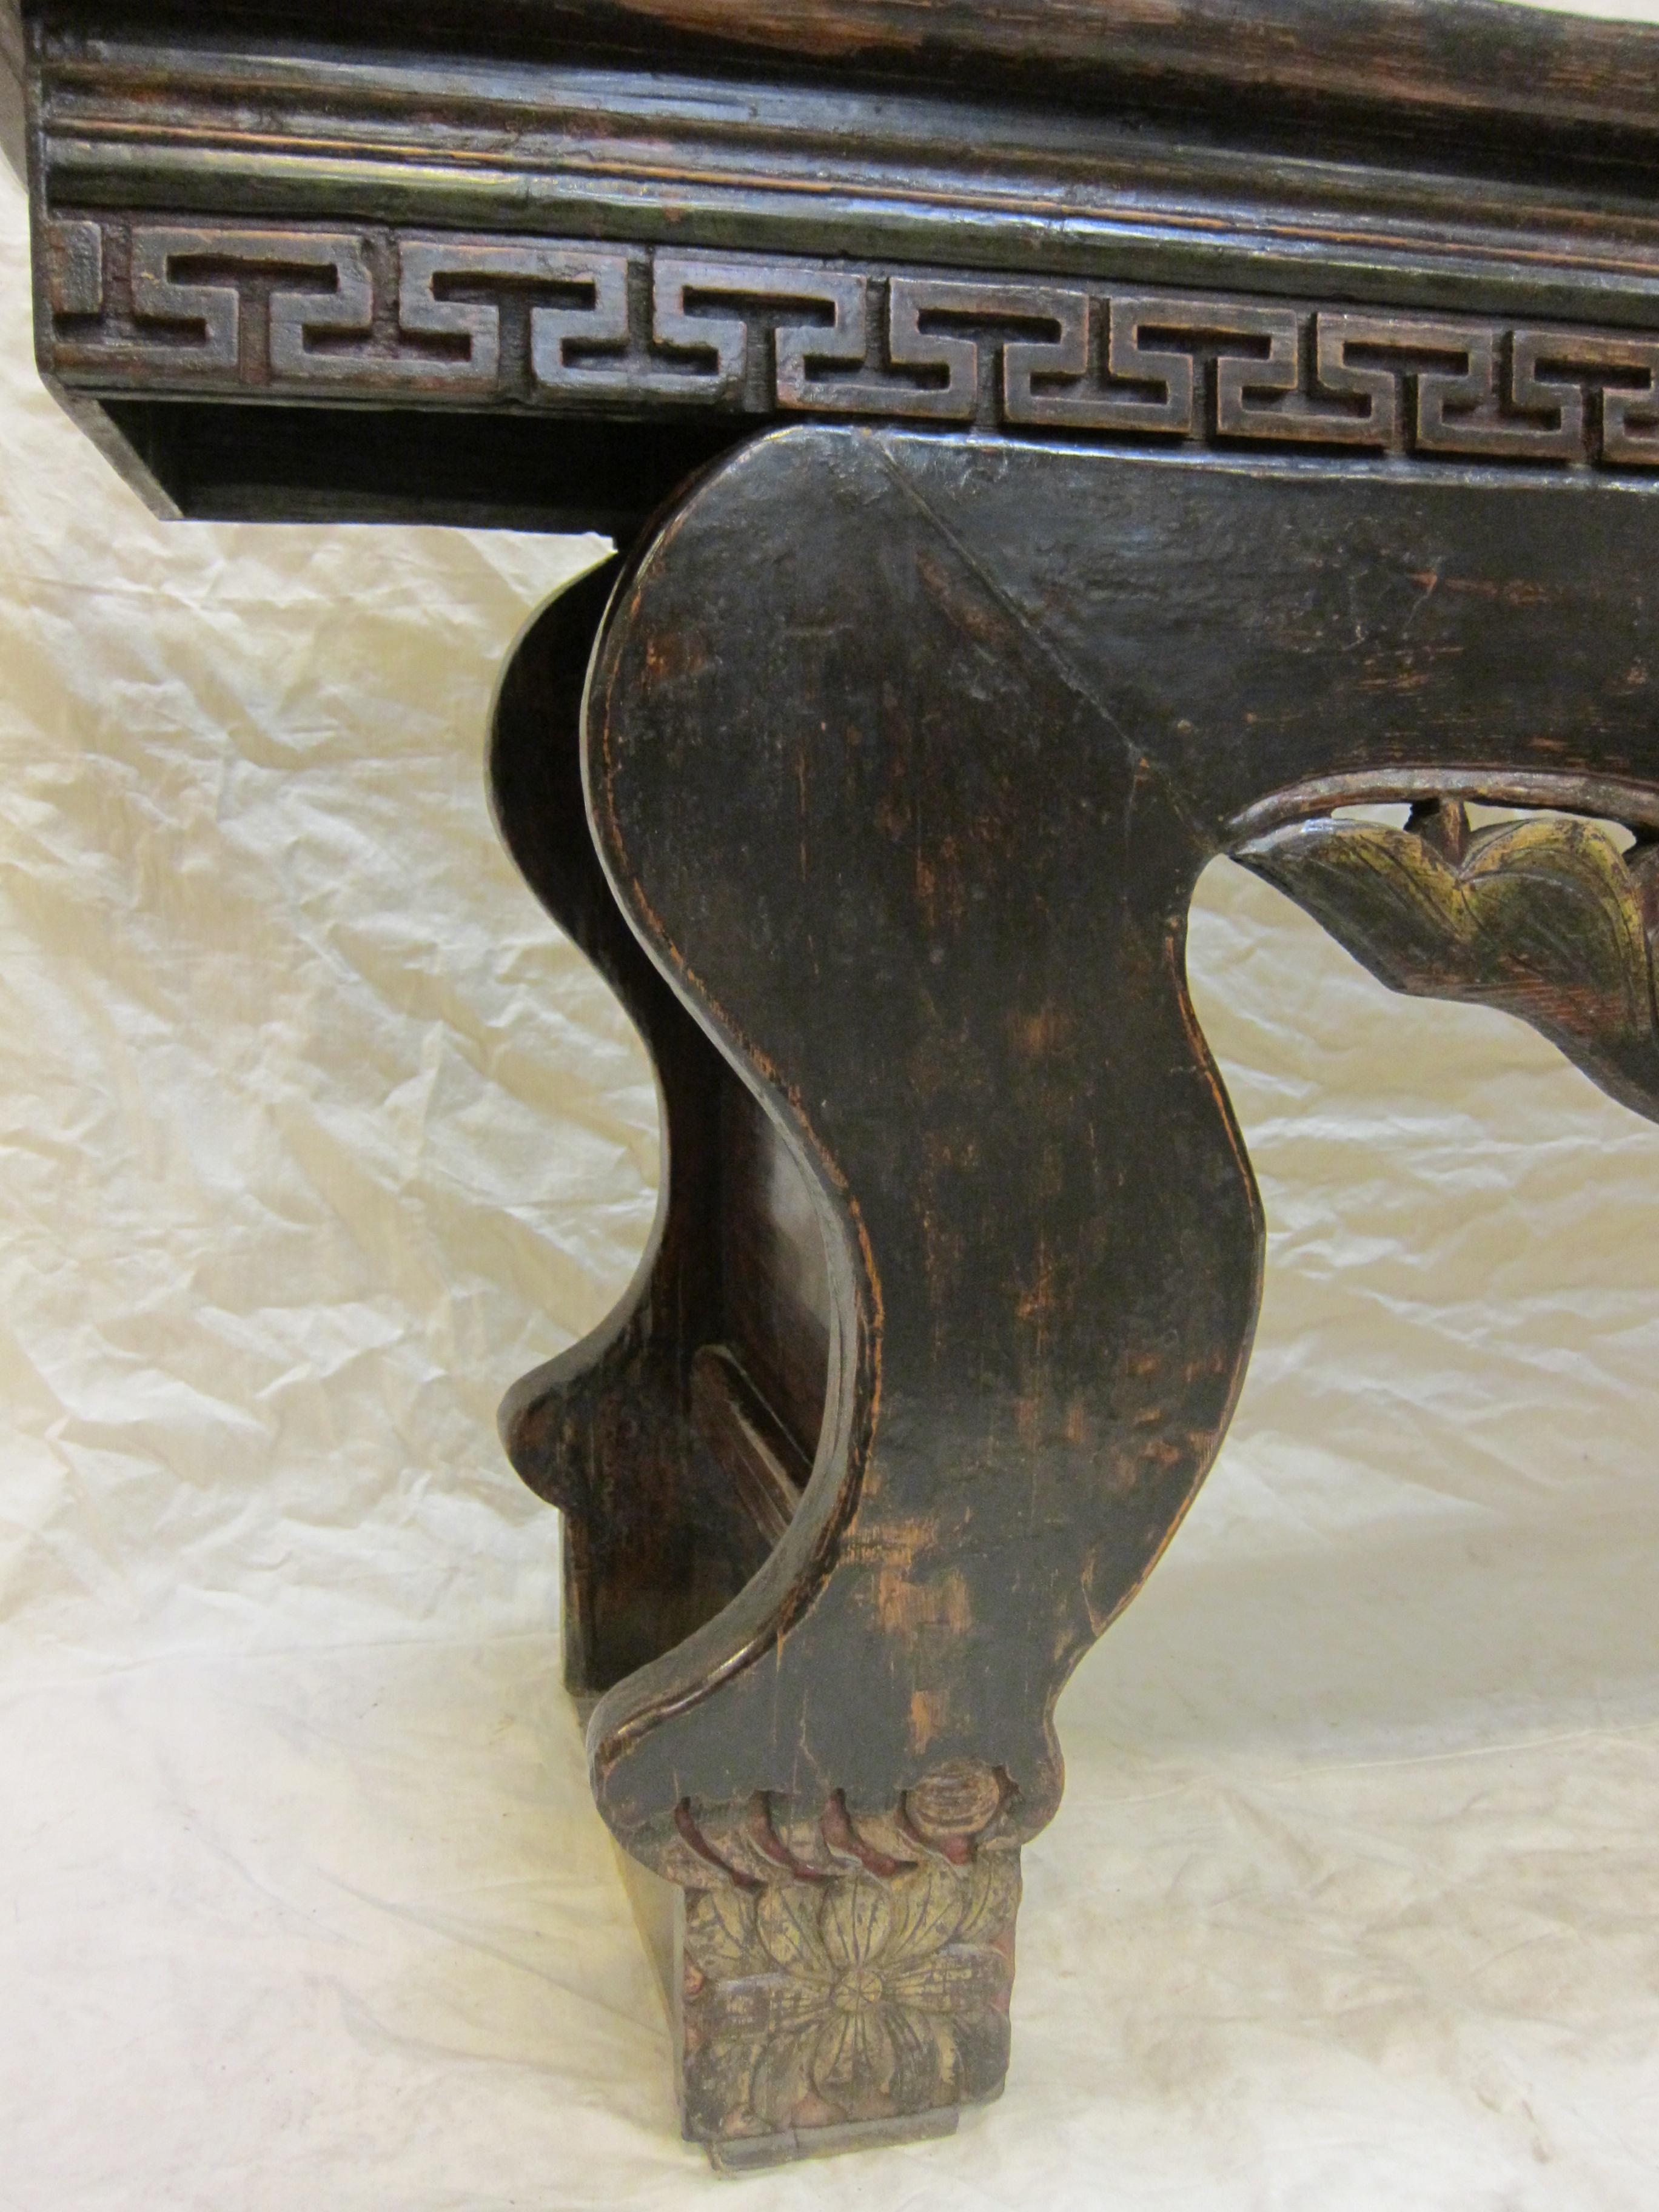 Altartisch aus der chinesischen Dynastie. Monumentaler chinesischer Zen-Altartisch. Qing-Dynastie Zen Altar Tisch mit Löwen Beine mit Füßen halten Kugeln. Dieses Konzept hat seinen Ursprung im chinesischen Buddhismus und wurde dort populär, da man